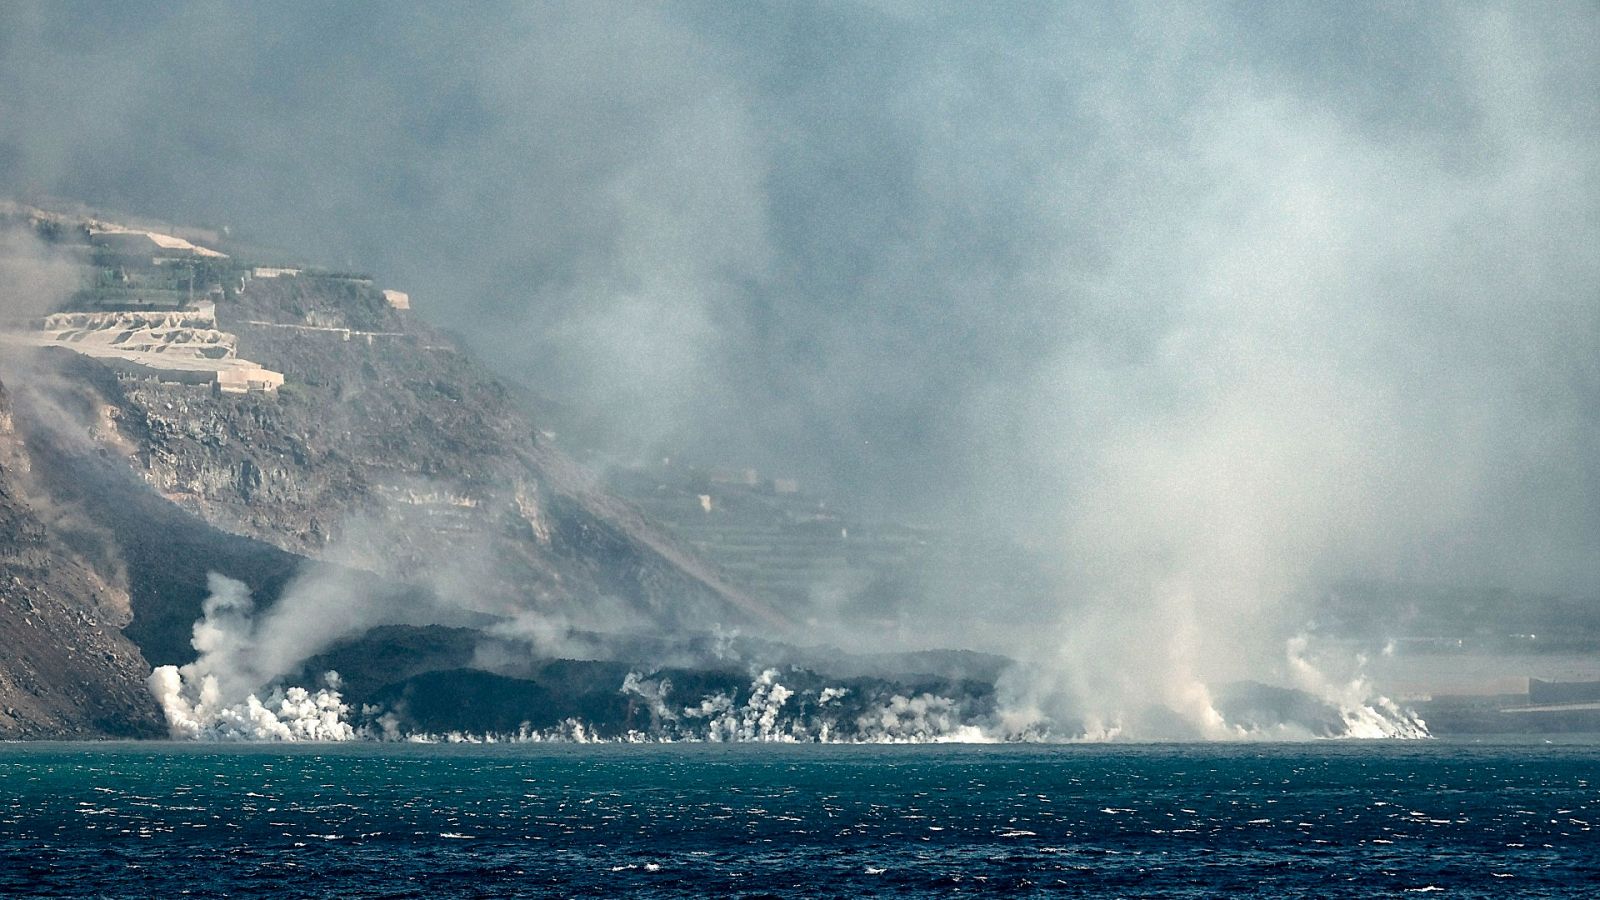 La llegada de la lava al mar "no es ni buena ni mala, es un proceso natural" - Ver ahora